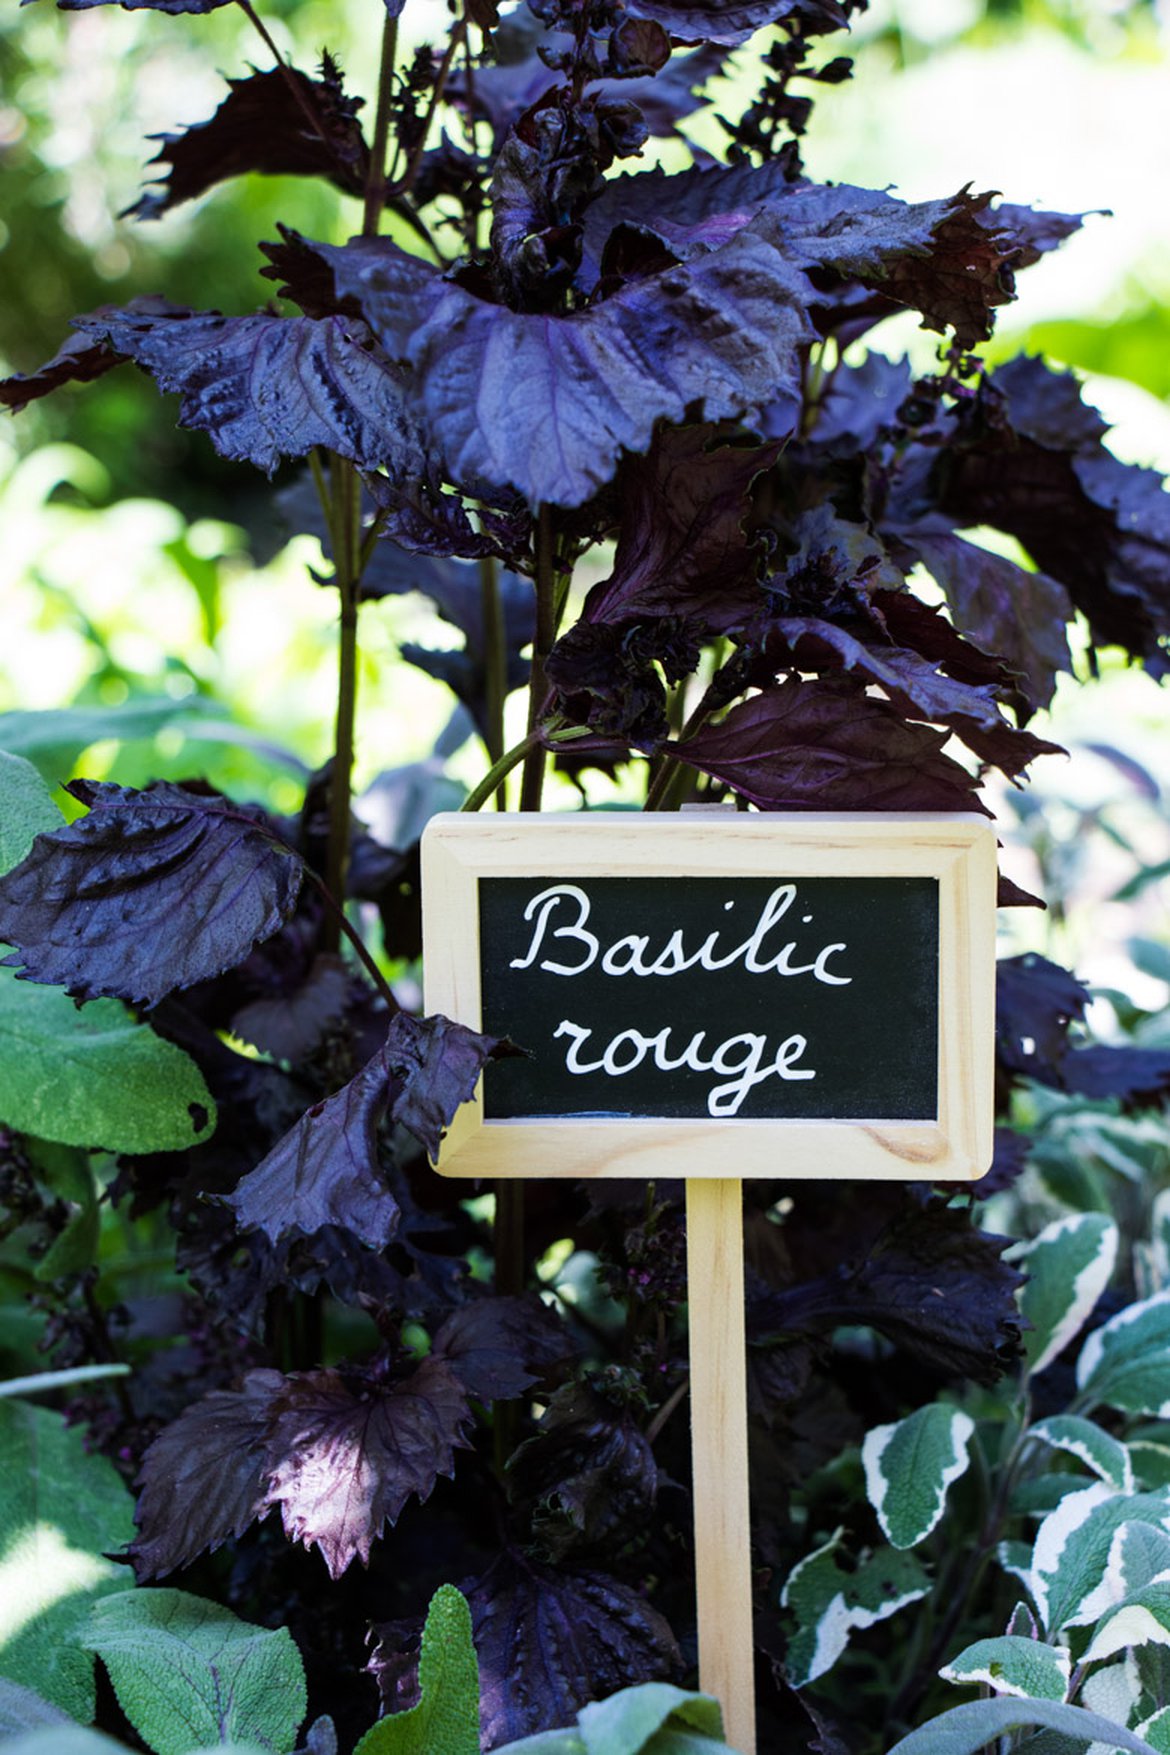 Basilic rouge - Plantes aromatiques - Inspirations végétales Schilliger magazine printemps 2022